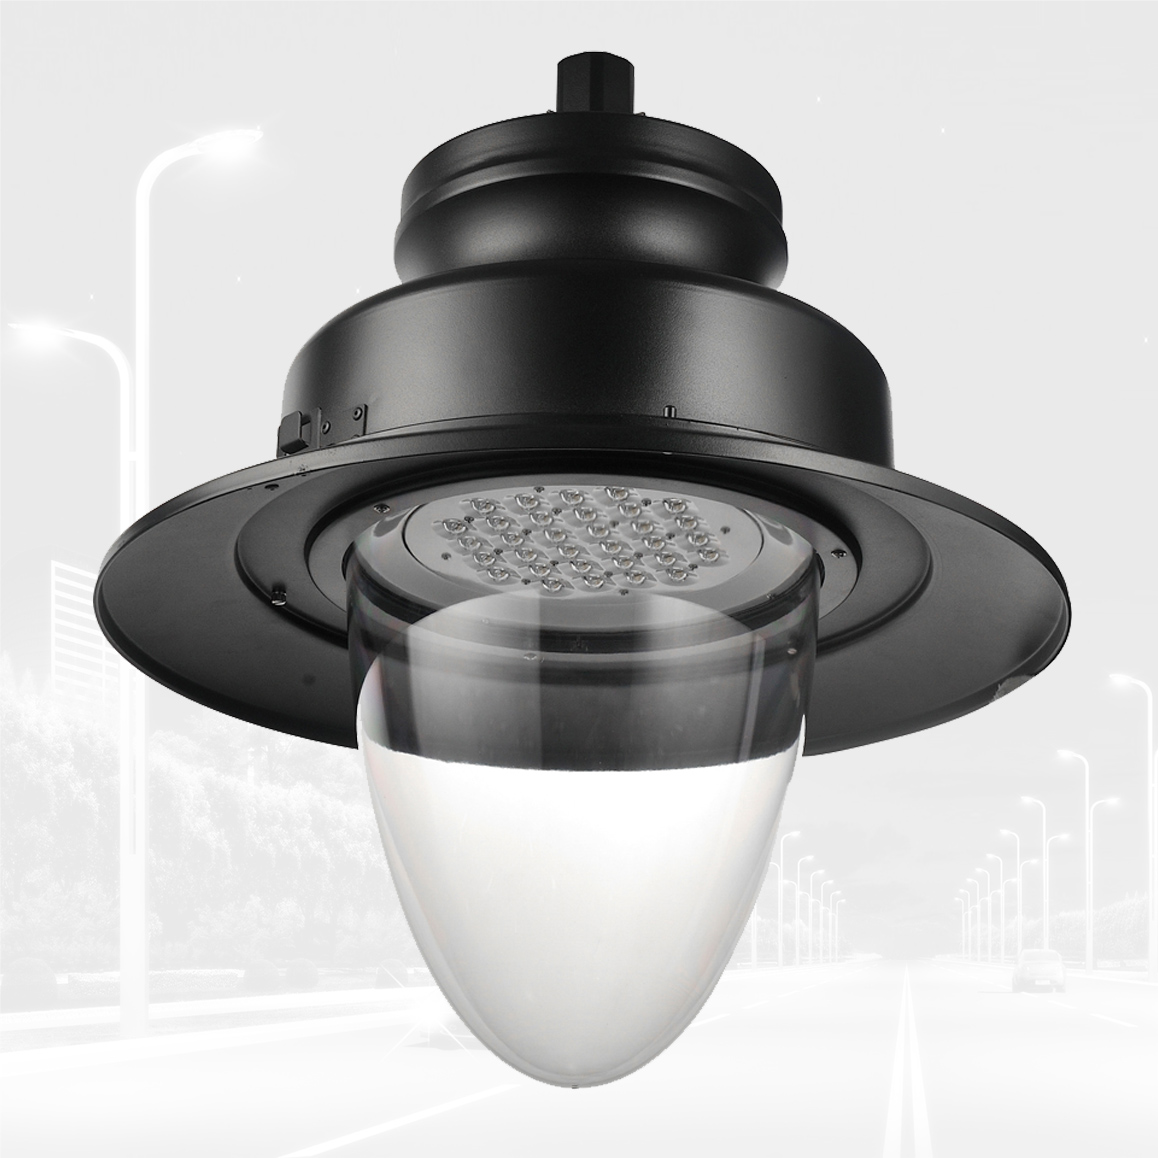 Klassiek Design IP65 Waterdicht 30W-70W Outdoor LED Garden Lamp Armatuur